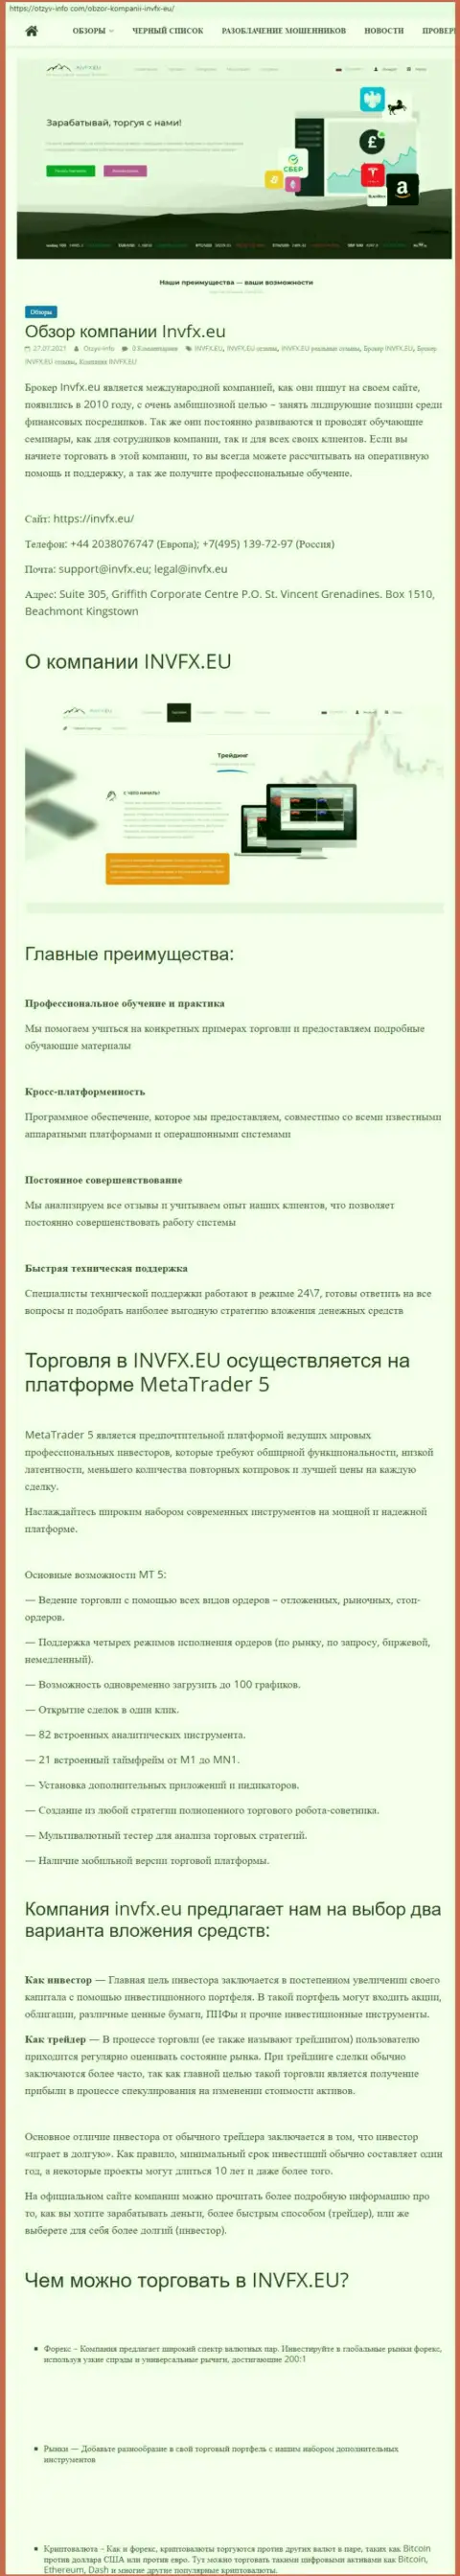 Web-портал otzyv-info com опубликовал статью о ФОРЕКС-брокере ИНВФИкс Еу